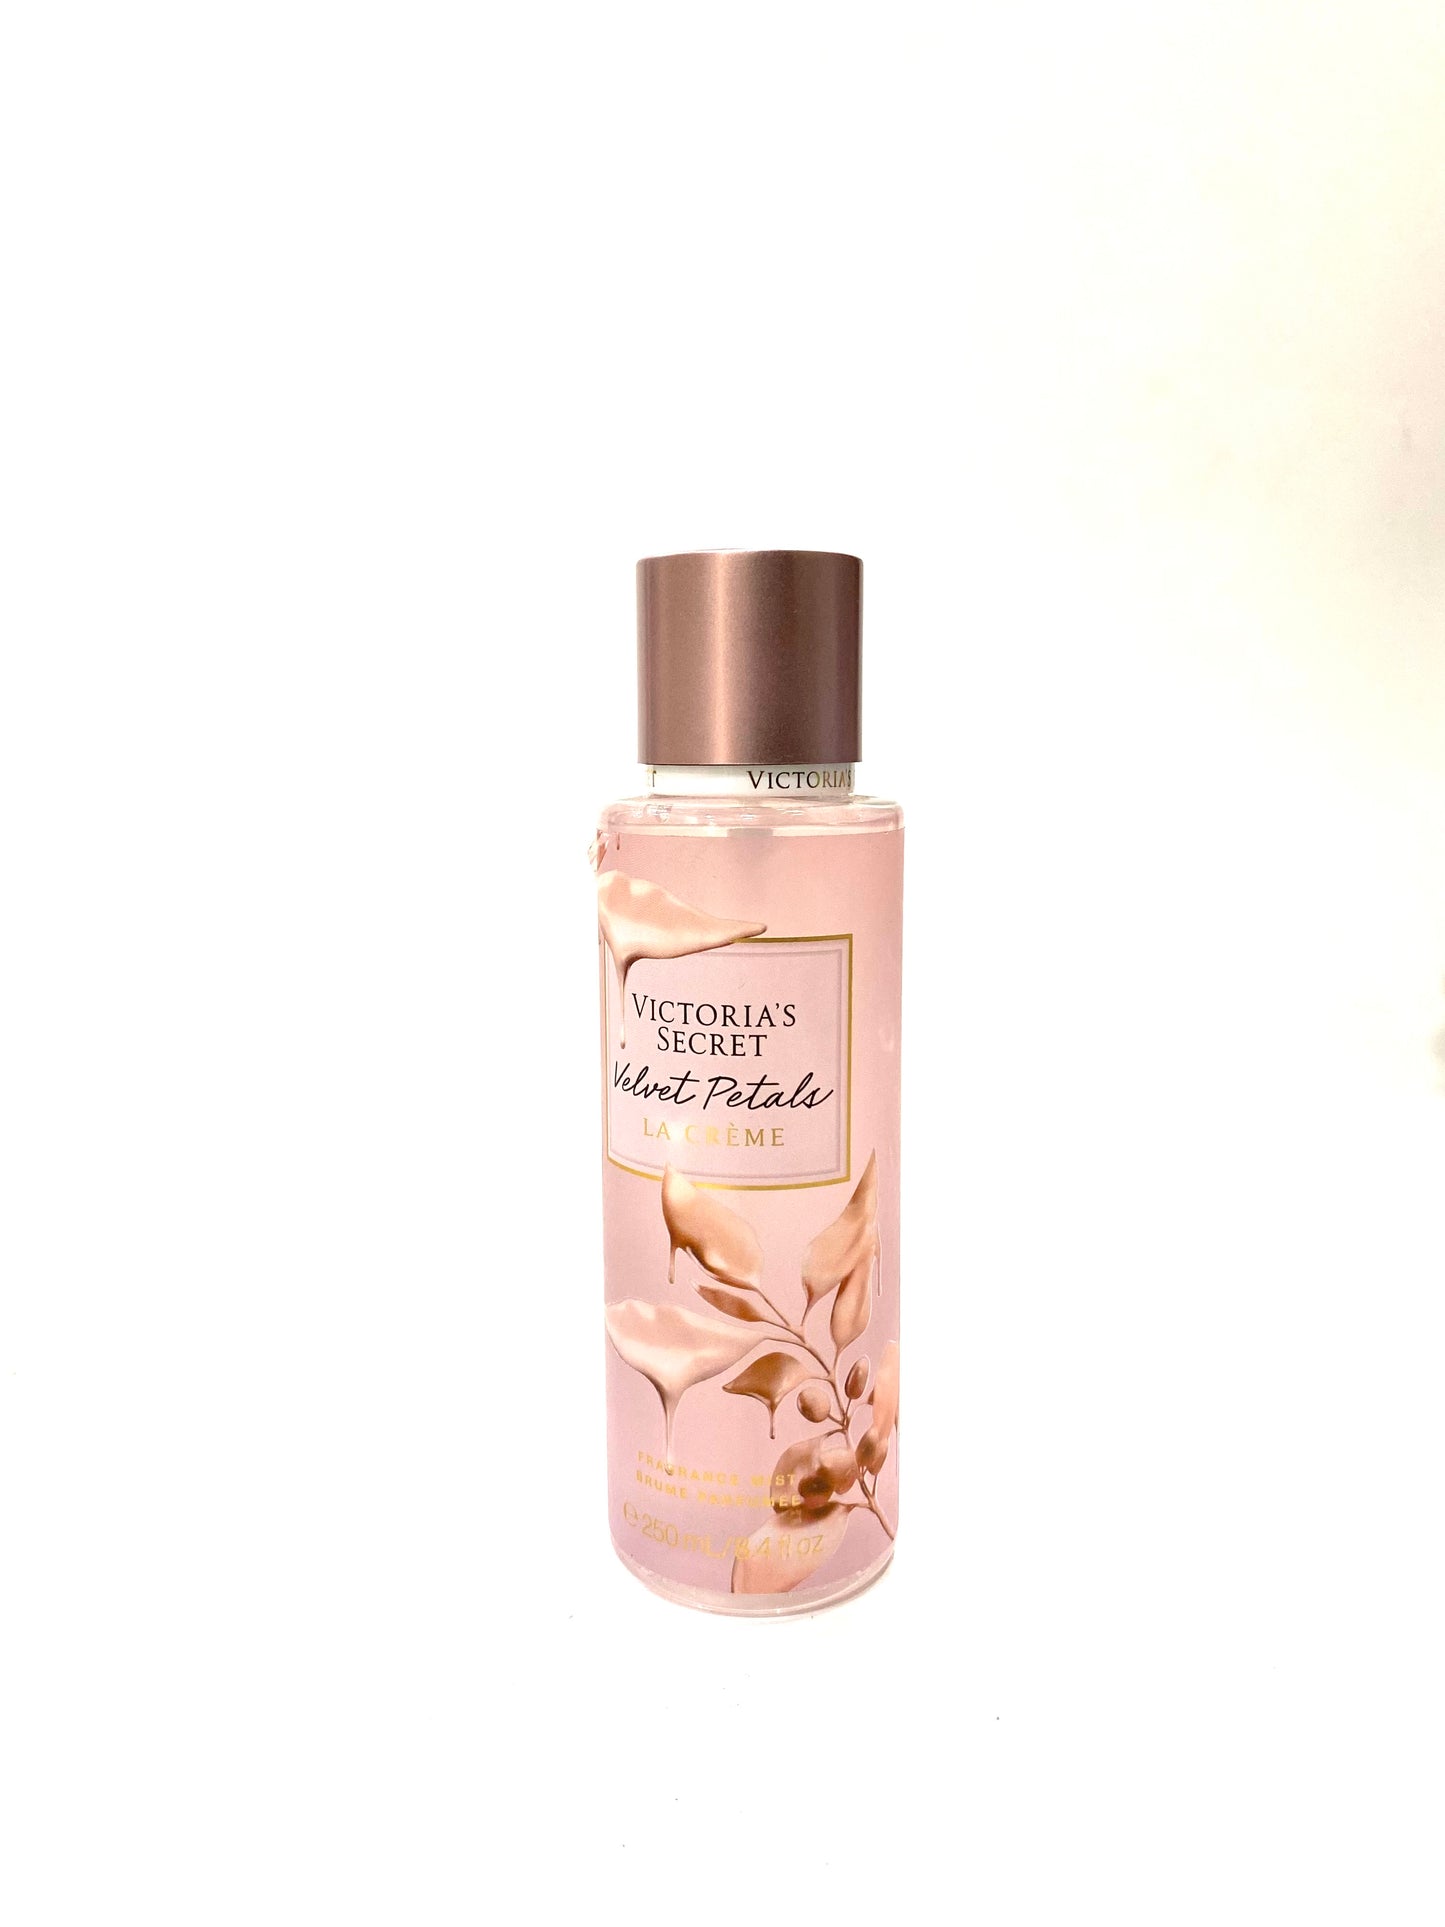 Victoria’s Secret Velvet Petals La Creme Fragrance Mist